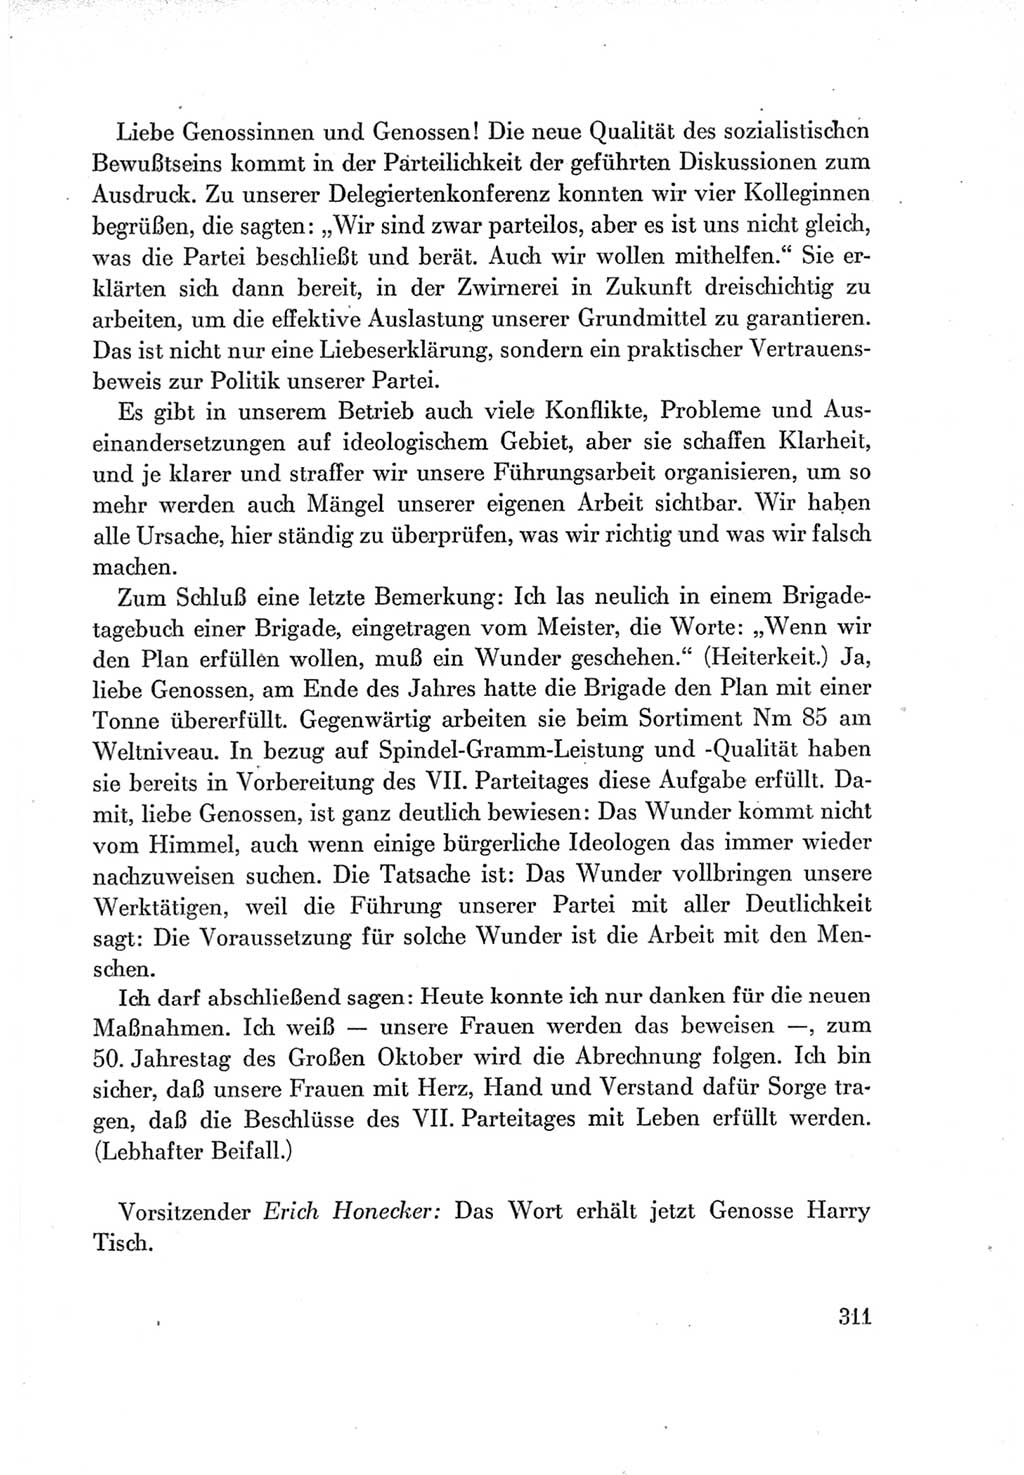 Protokoll der Verhandlungen des Ⅶ. Parteitages der Sozialistischen Einheitspartei Deutschlands (SED) [Deutsche Demokratische Republik (DDR)] 1967, Band Ⅰ, Seite 311 (Prot. Verh. Ⅶ. PT SED DDR 1967, Bd. Ⅰ, S. 311)